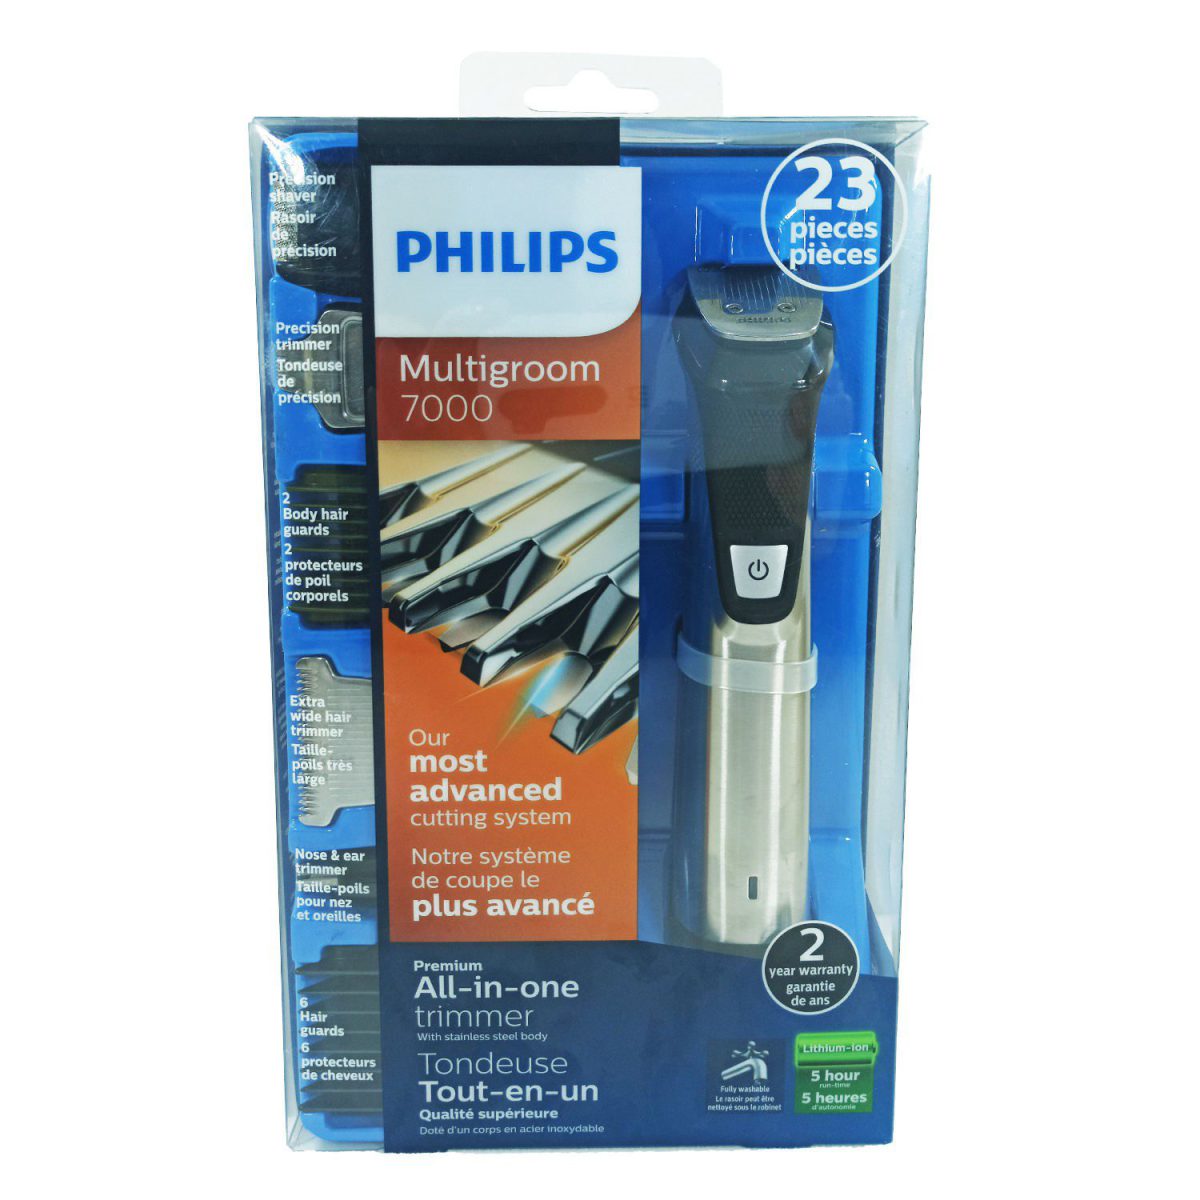 ست ماشین اصلاح موی صورت و بدن فیلیپس مدل MG7770/28 نمایندگی فیلیپس محصولات فیلیپس ریش تراش فیلیپس ریشتراش فیلیپس